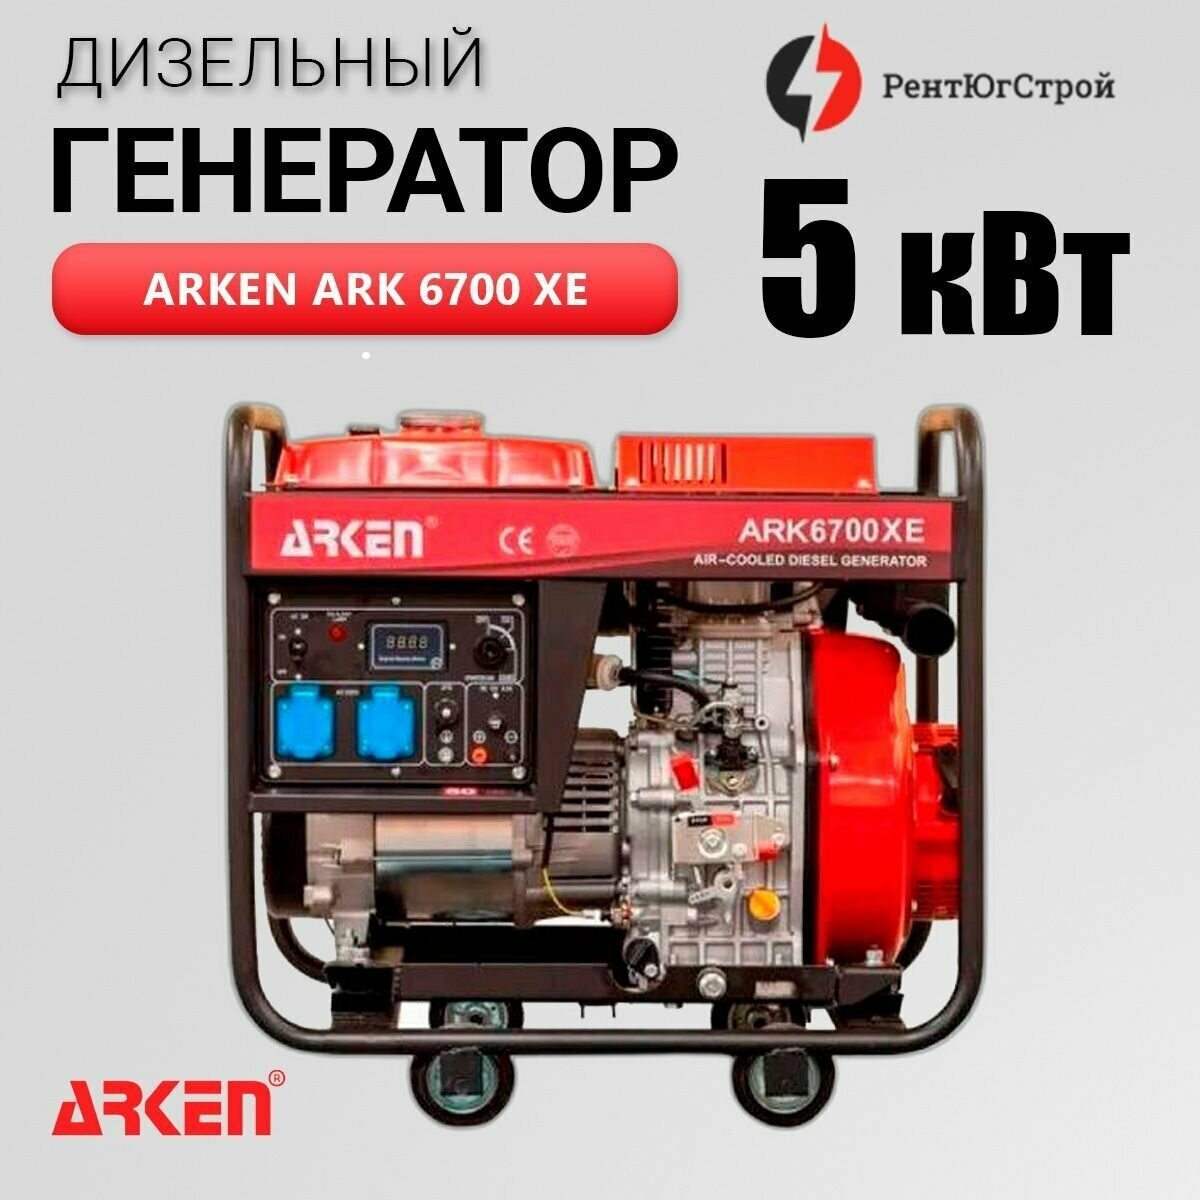 Дизельный генератор Arken ARK 6700 XE 5кВт - фотография № 1